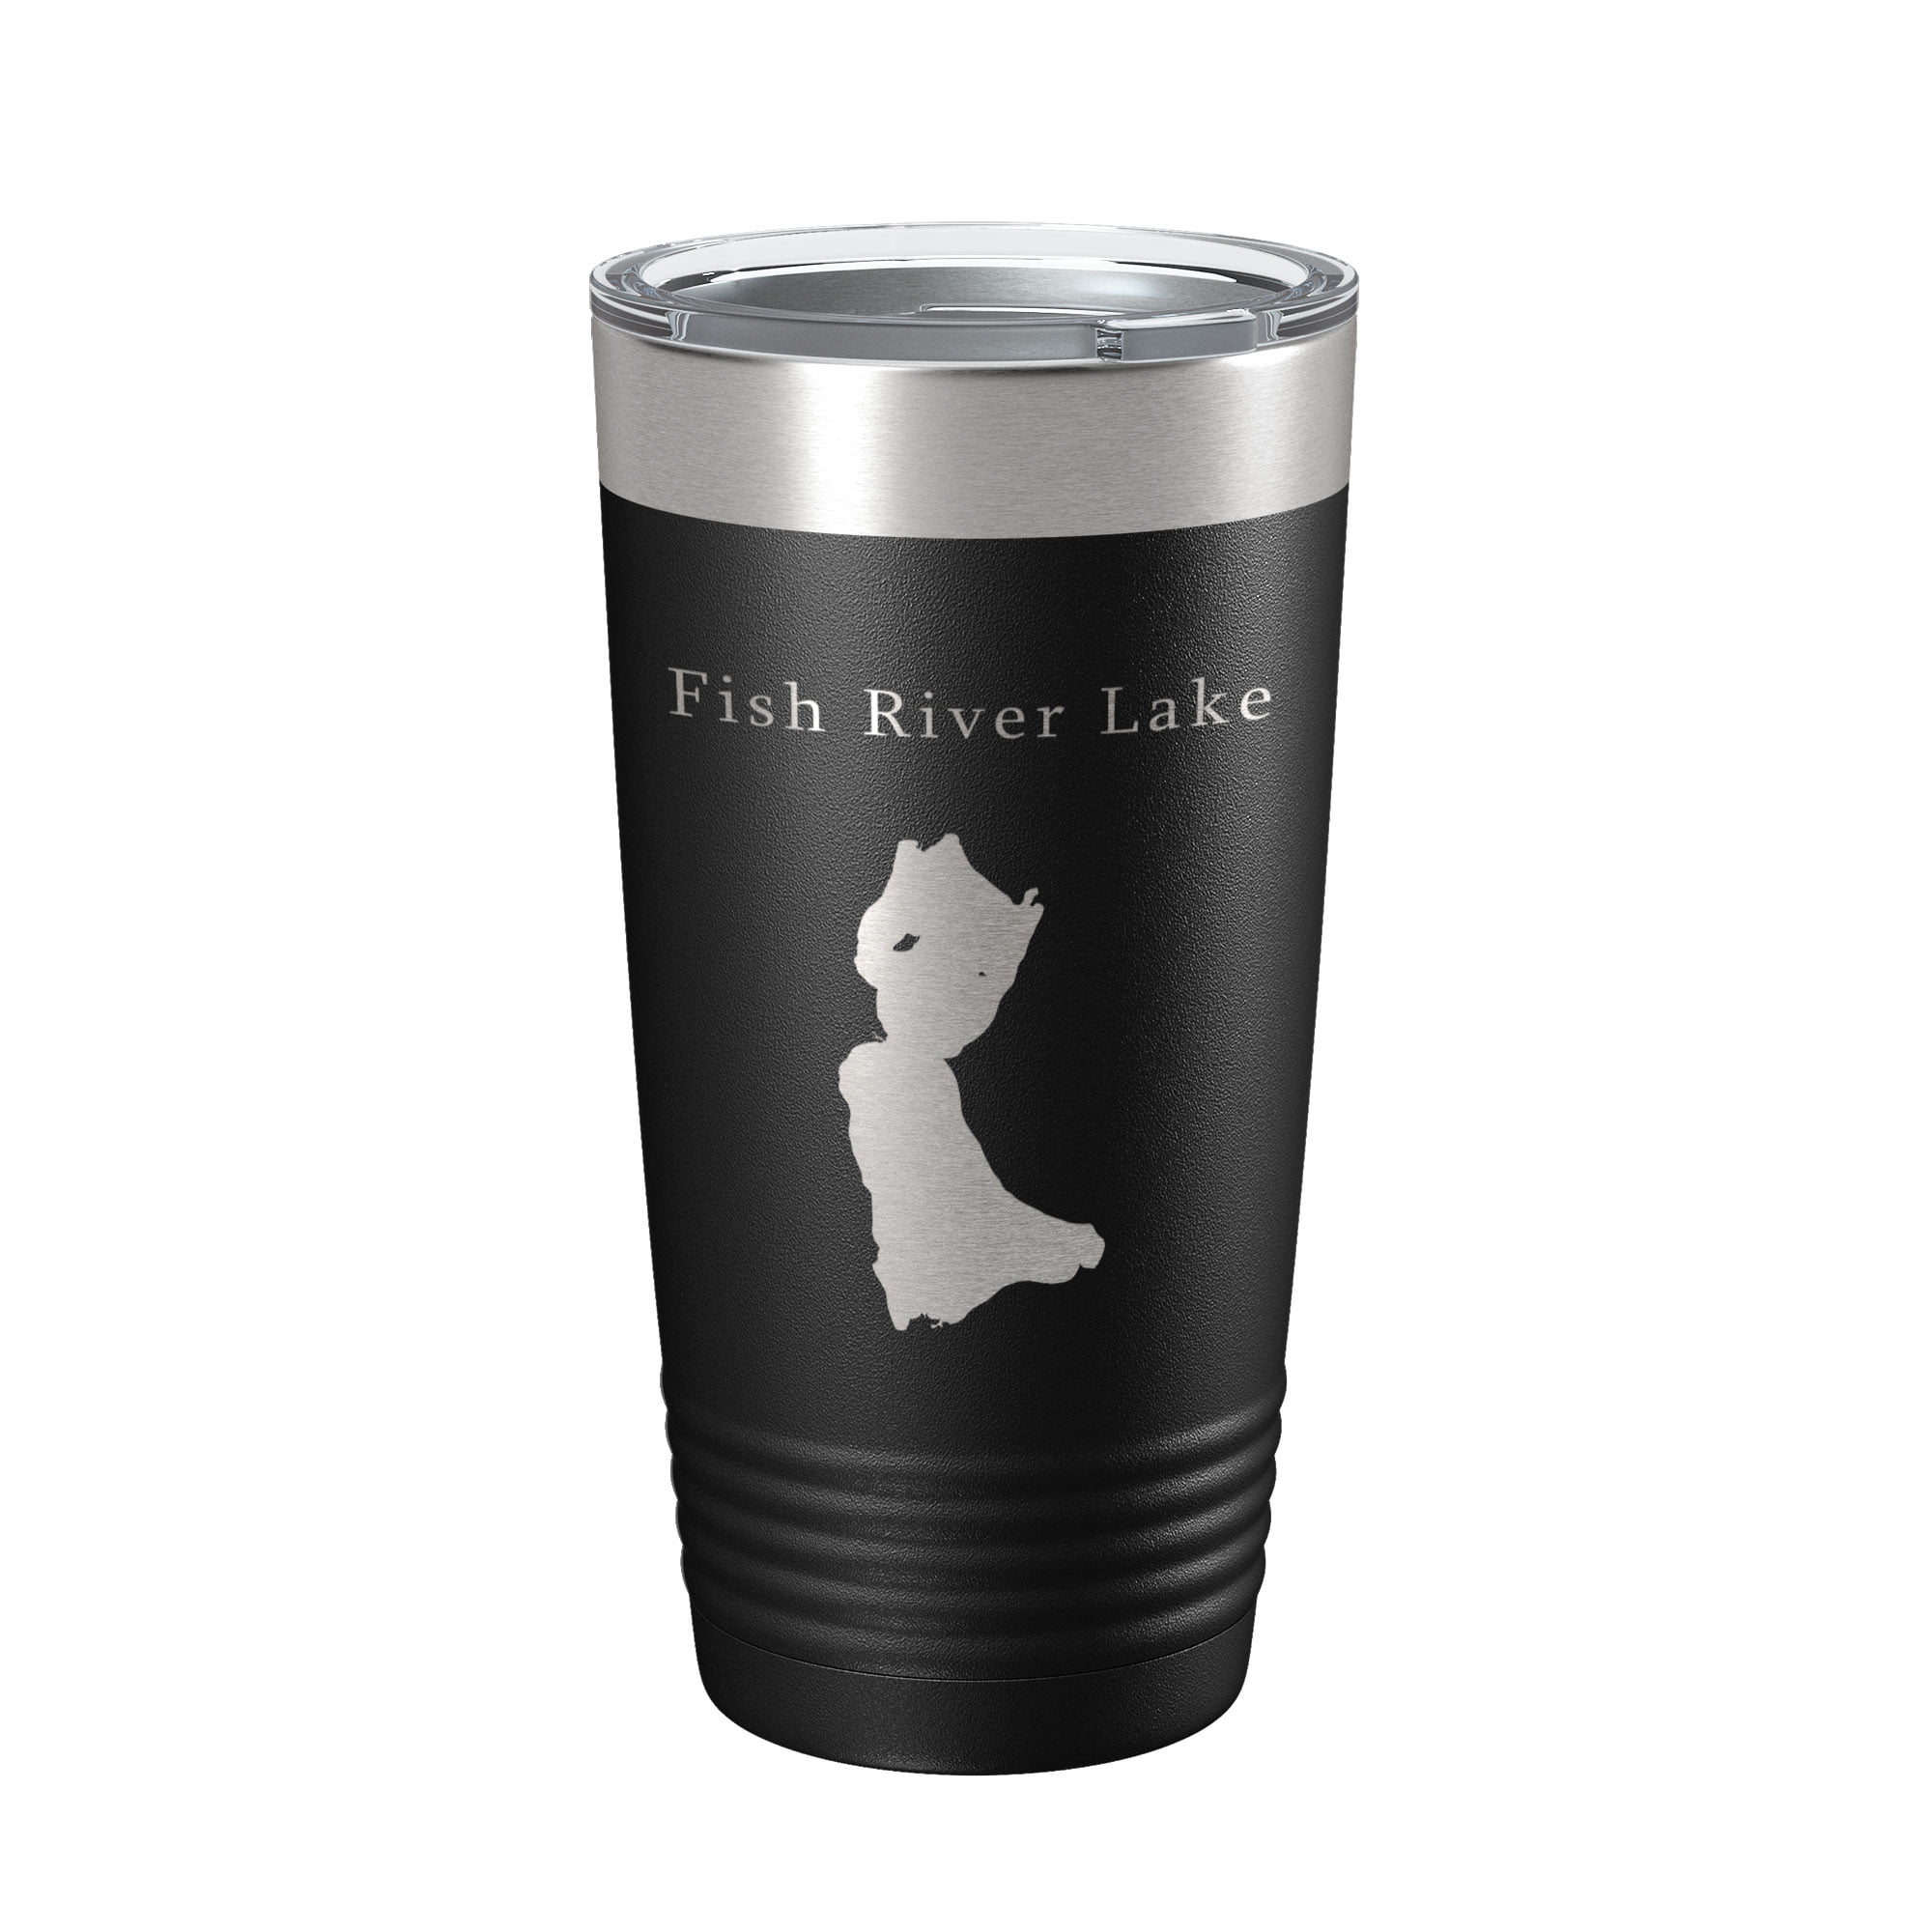 Fish River Lake Map Tumbler Travel Mug Insulated Laser Engraved